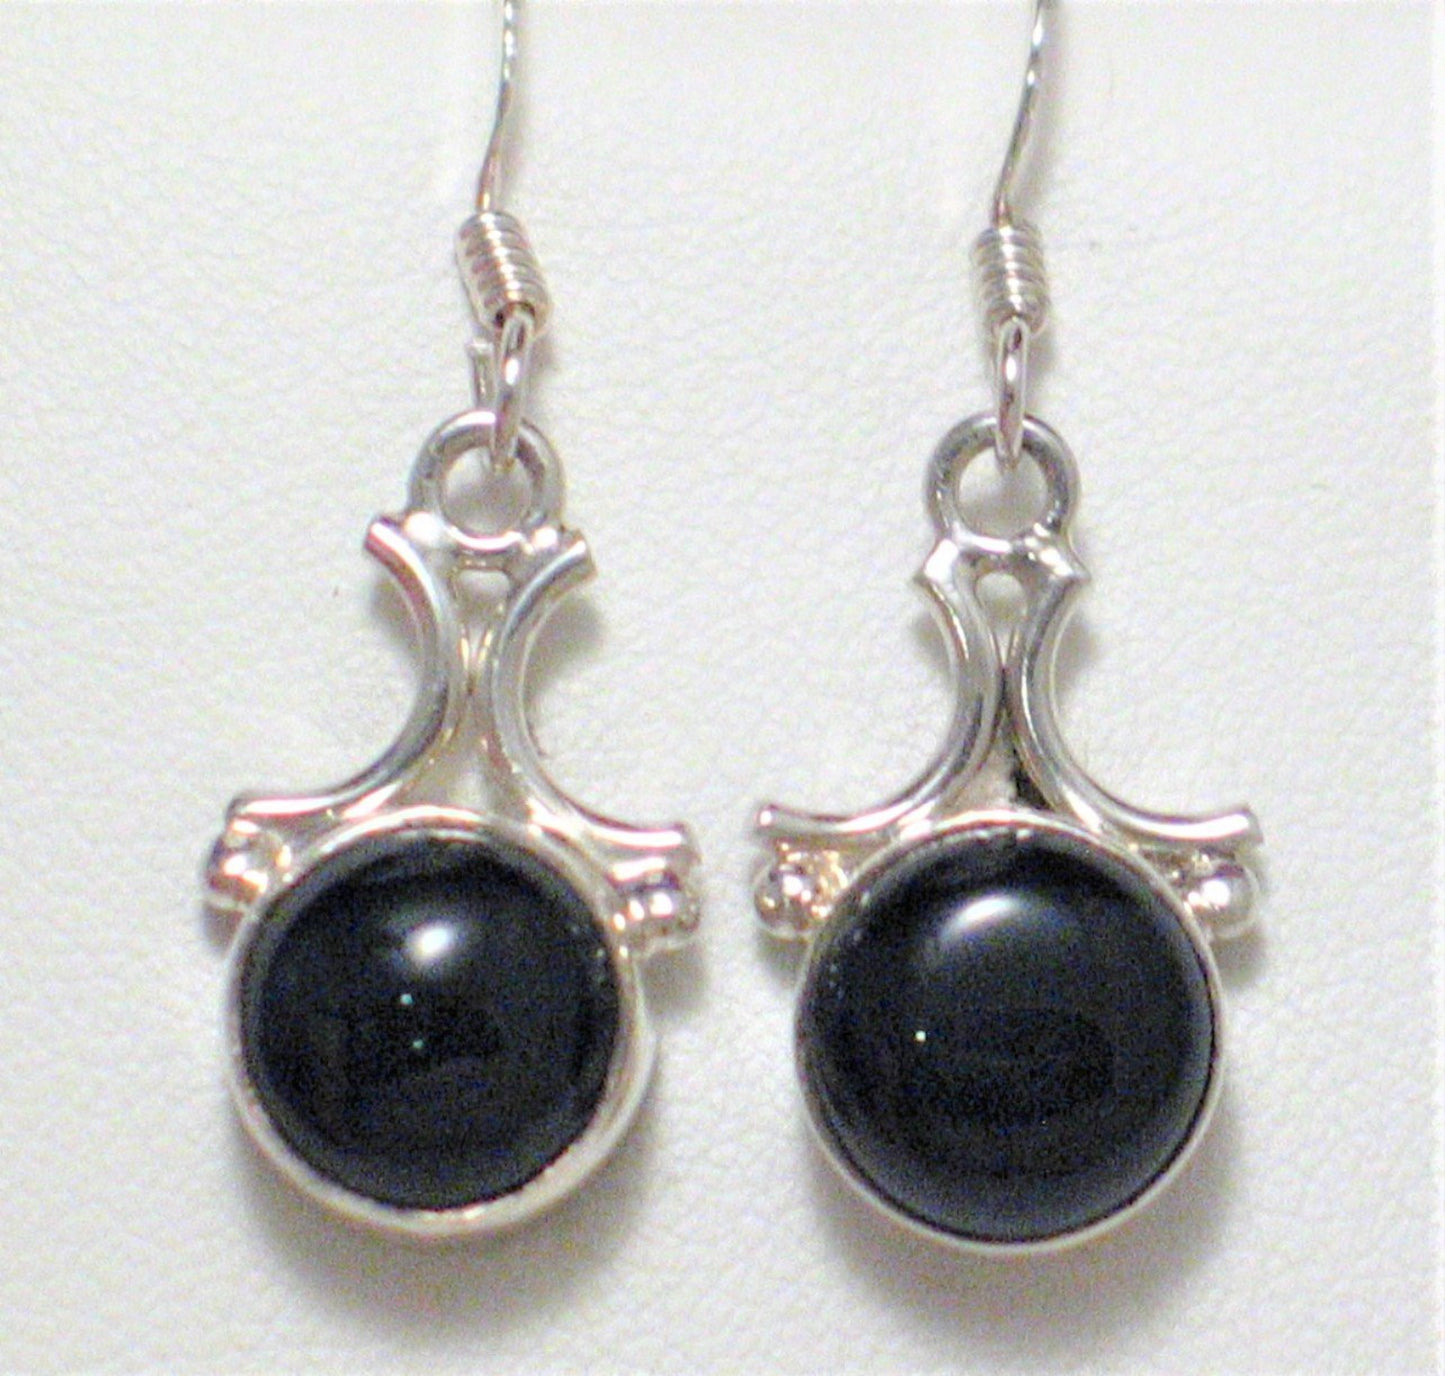 Earrings | Women's Sterling Silver Dazzling Jet Black Onyx Stone Dangle Earrings